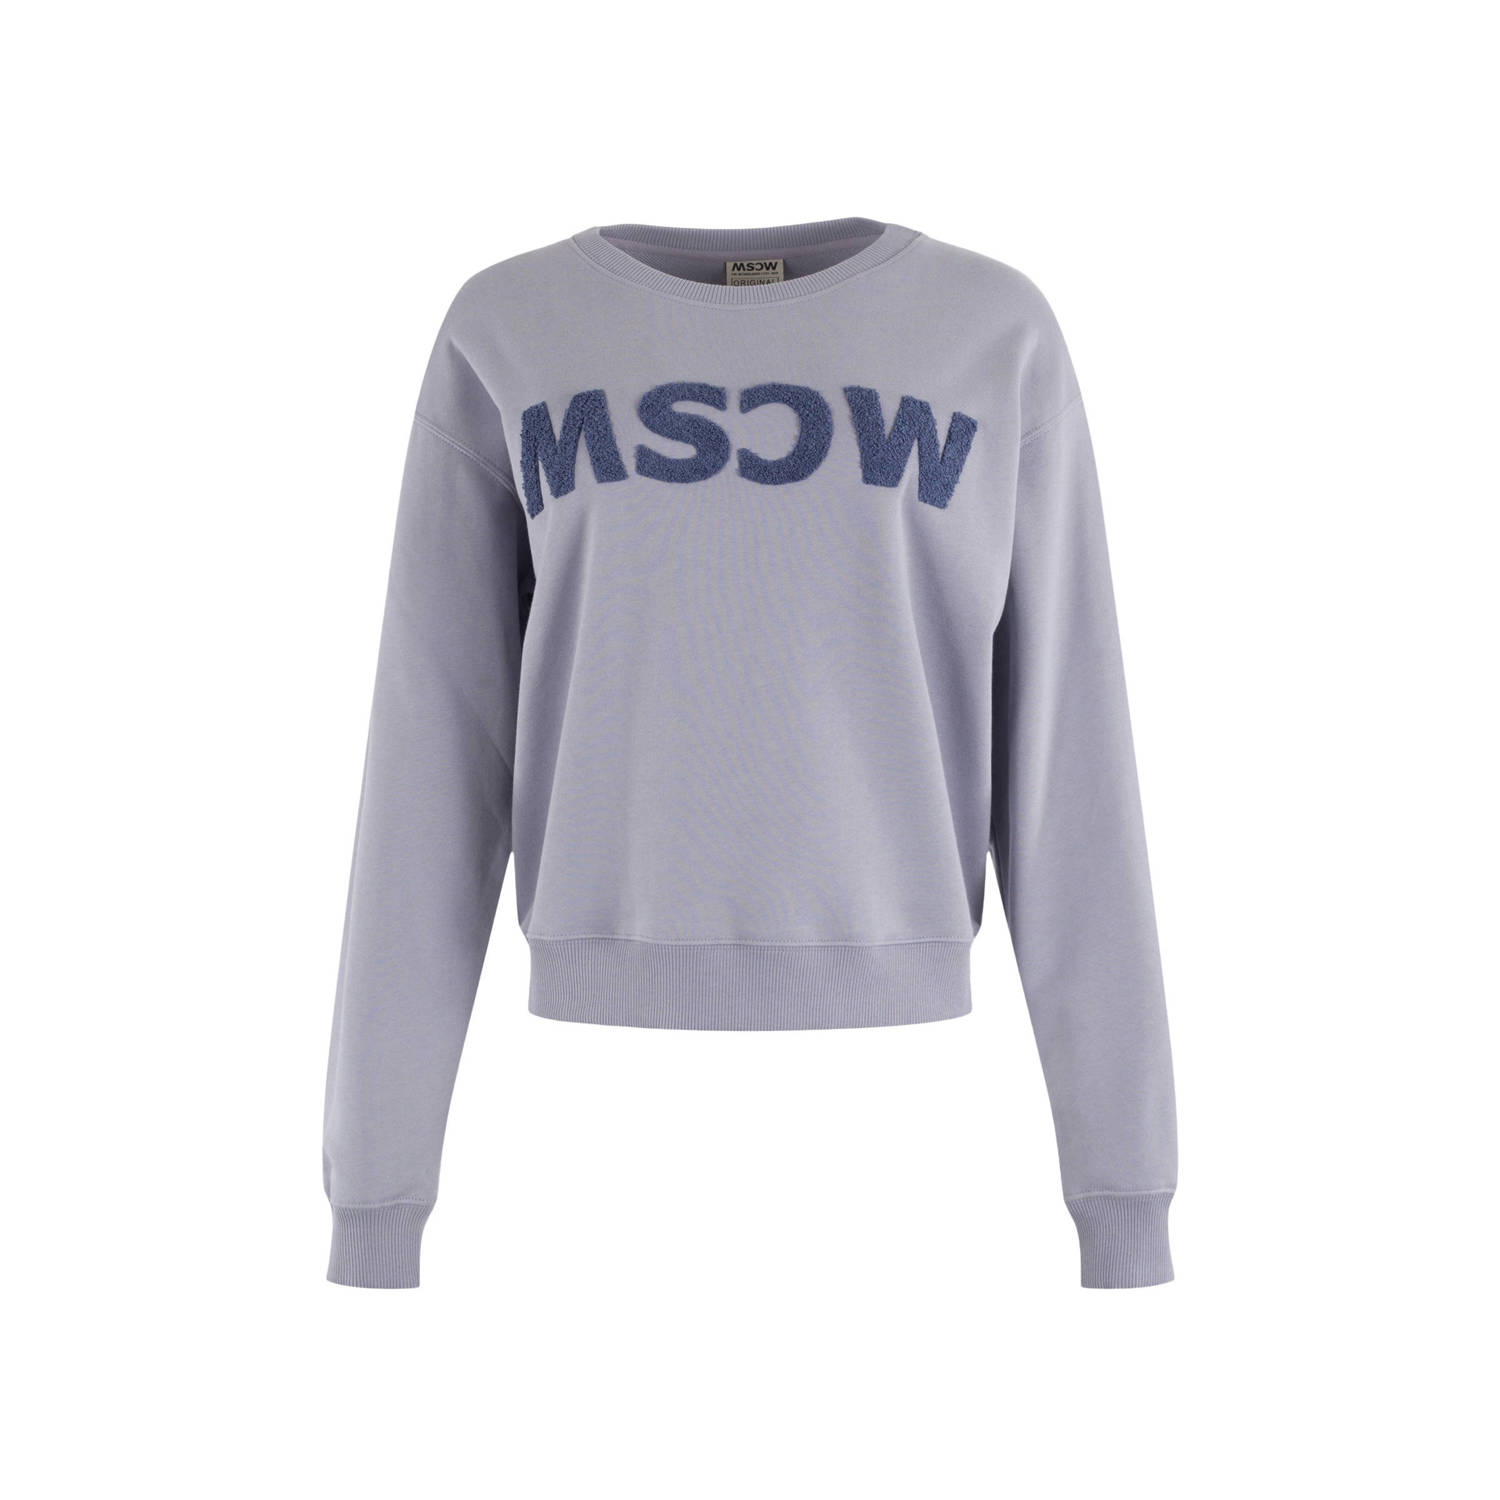 Moscow sweater met tekst lavendel